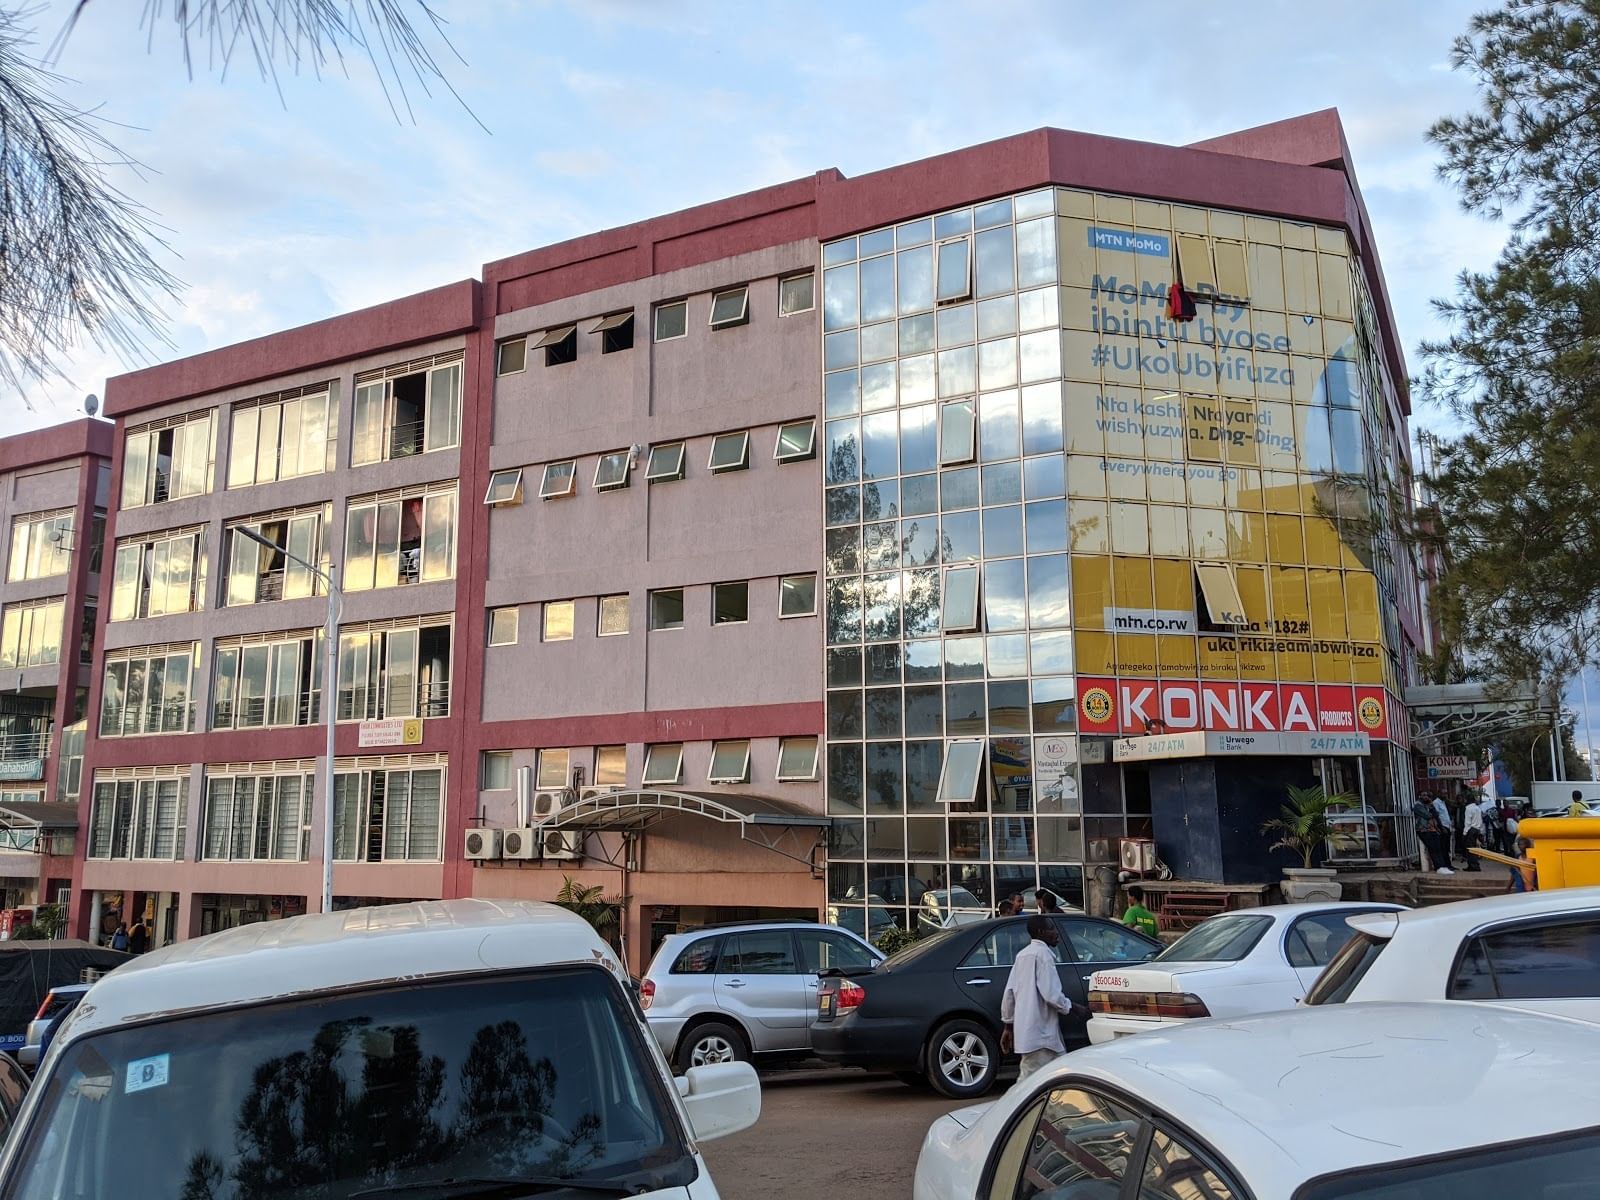 Kigali city market near Ubumwe Grande hotel